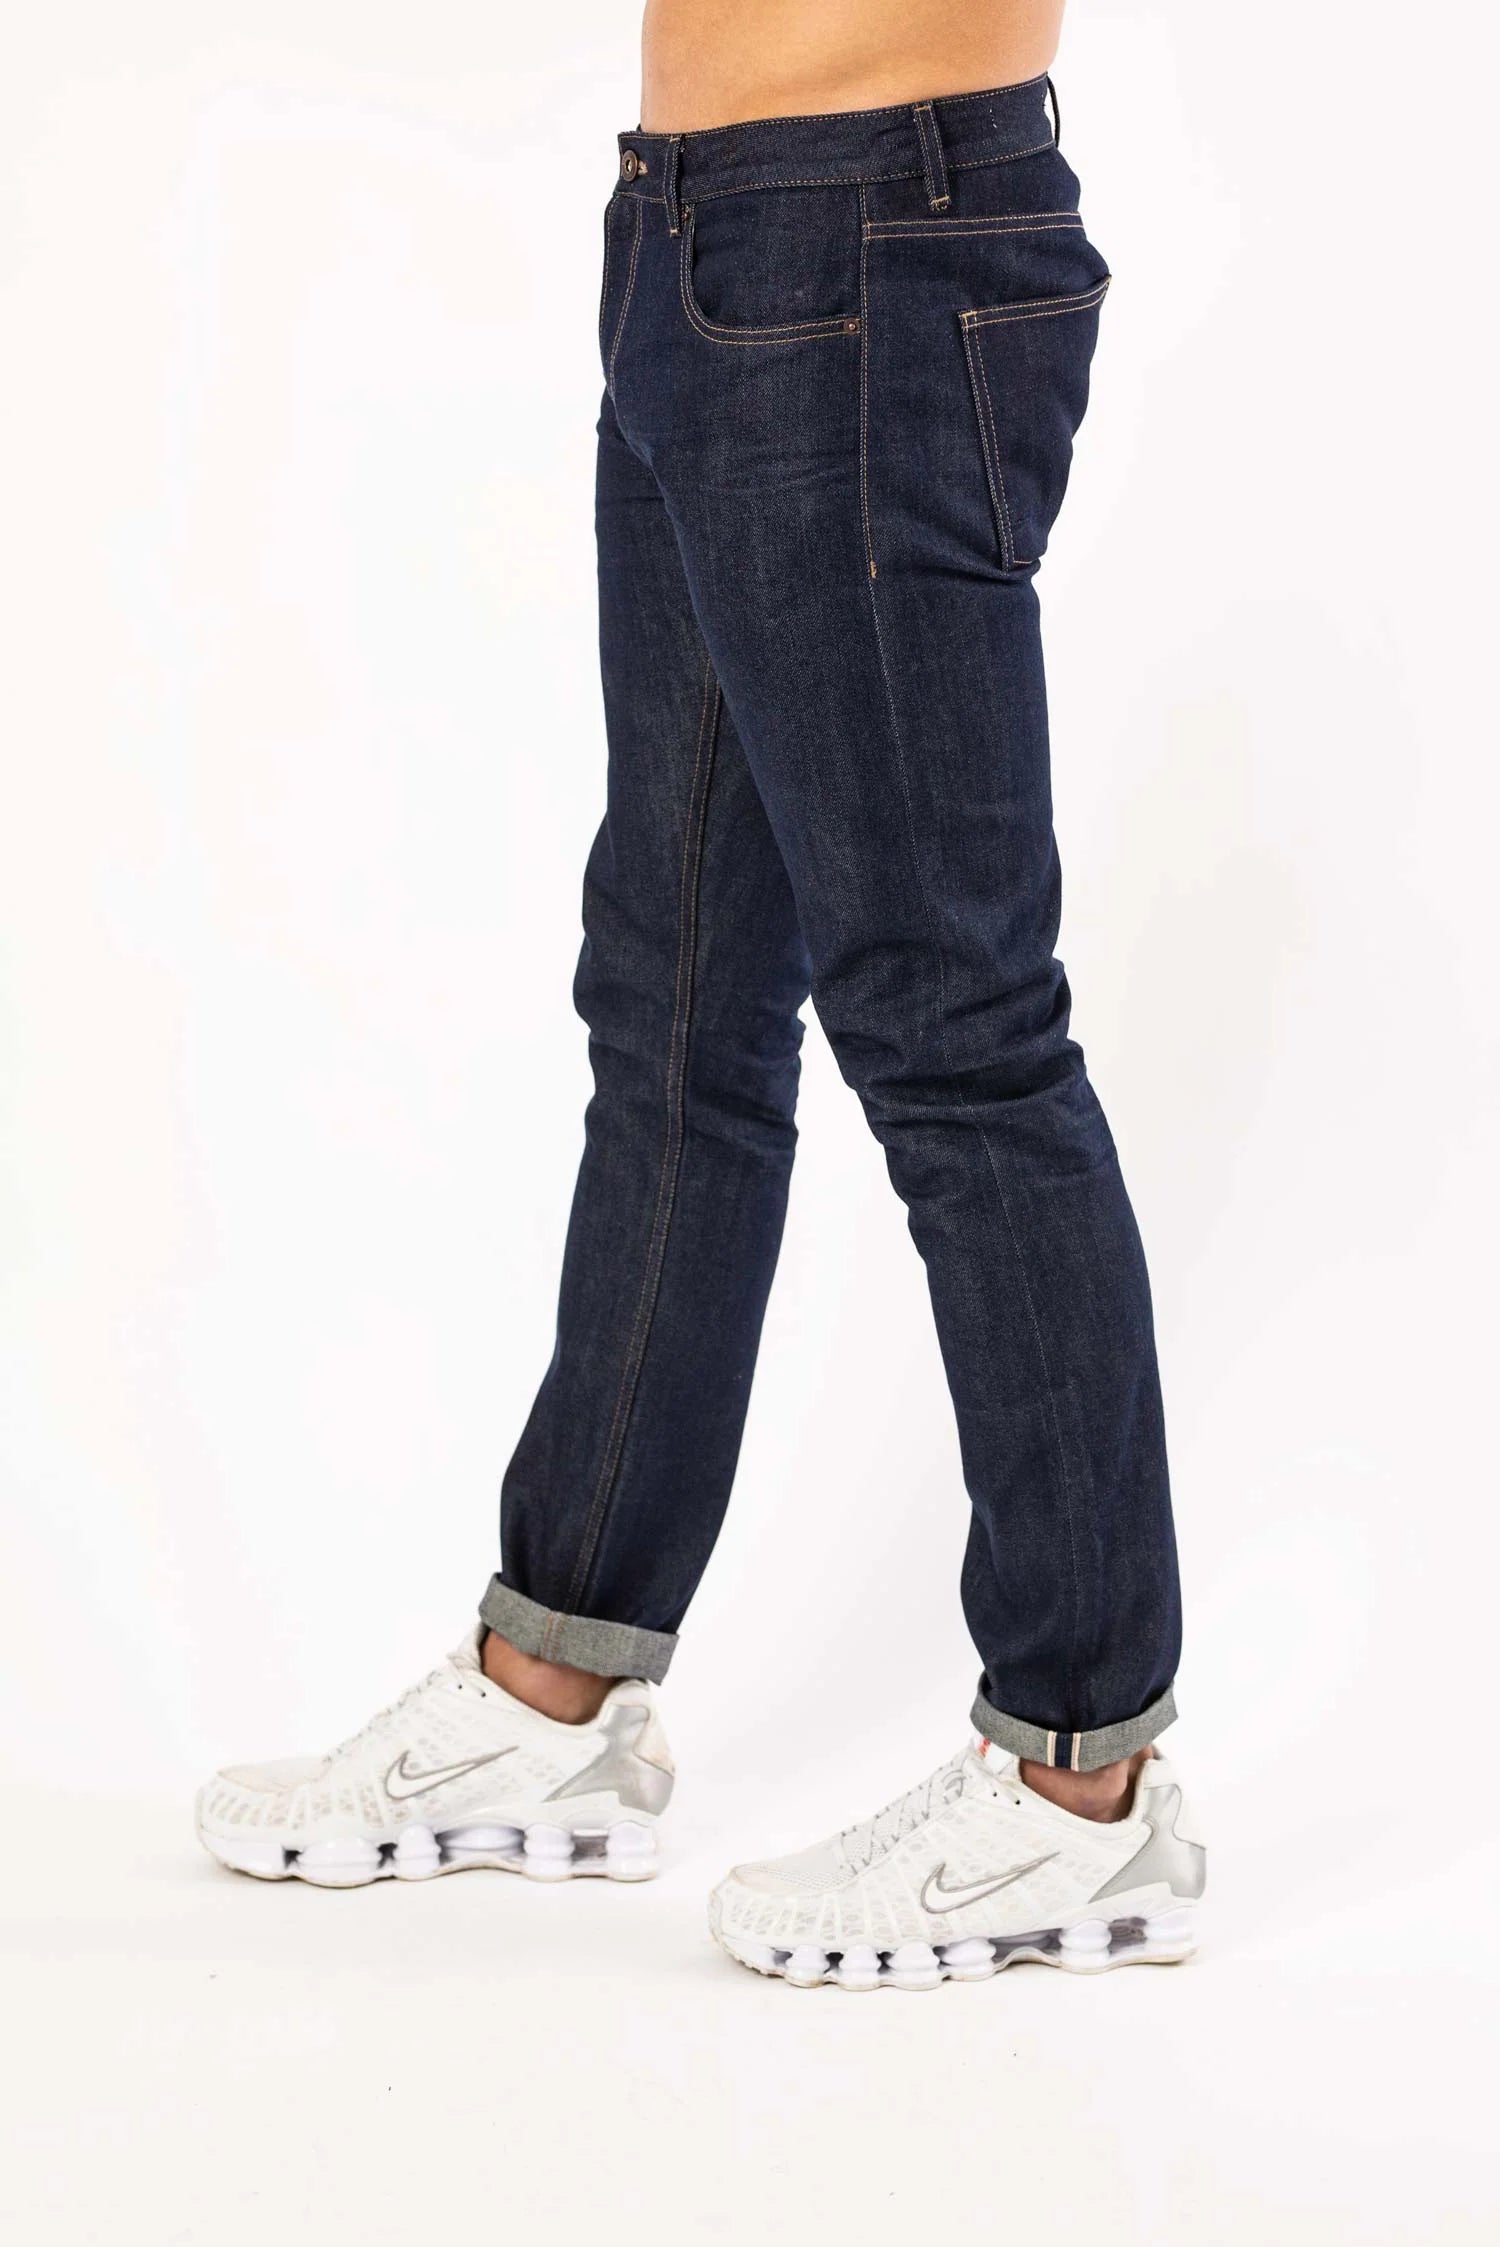 DML Klondike Slim Fit Selvedge Jeans In Rinse Wash - Raw Menswear